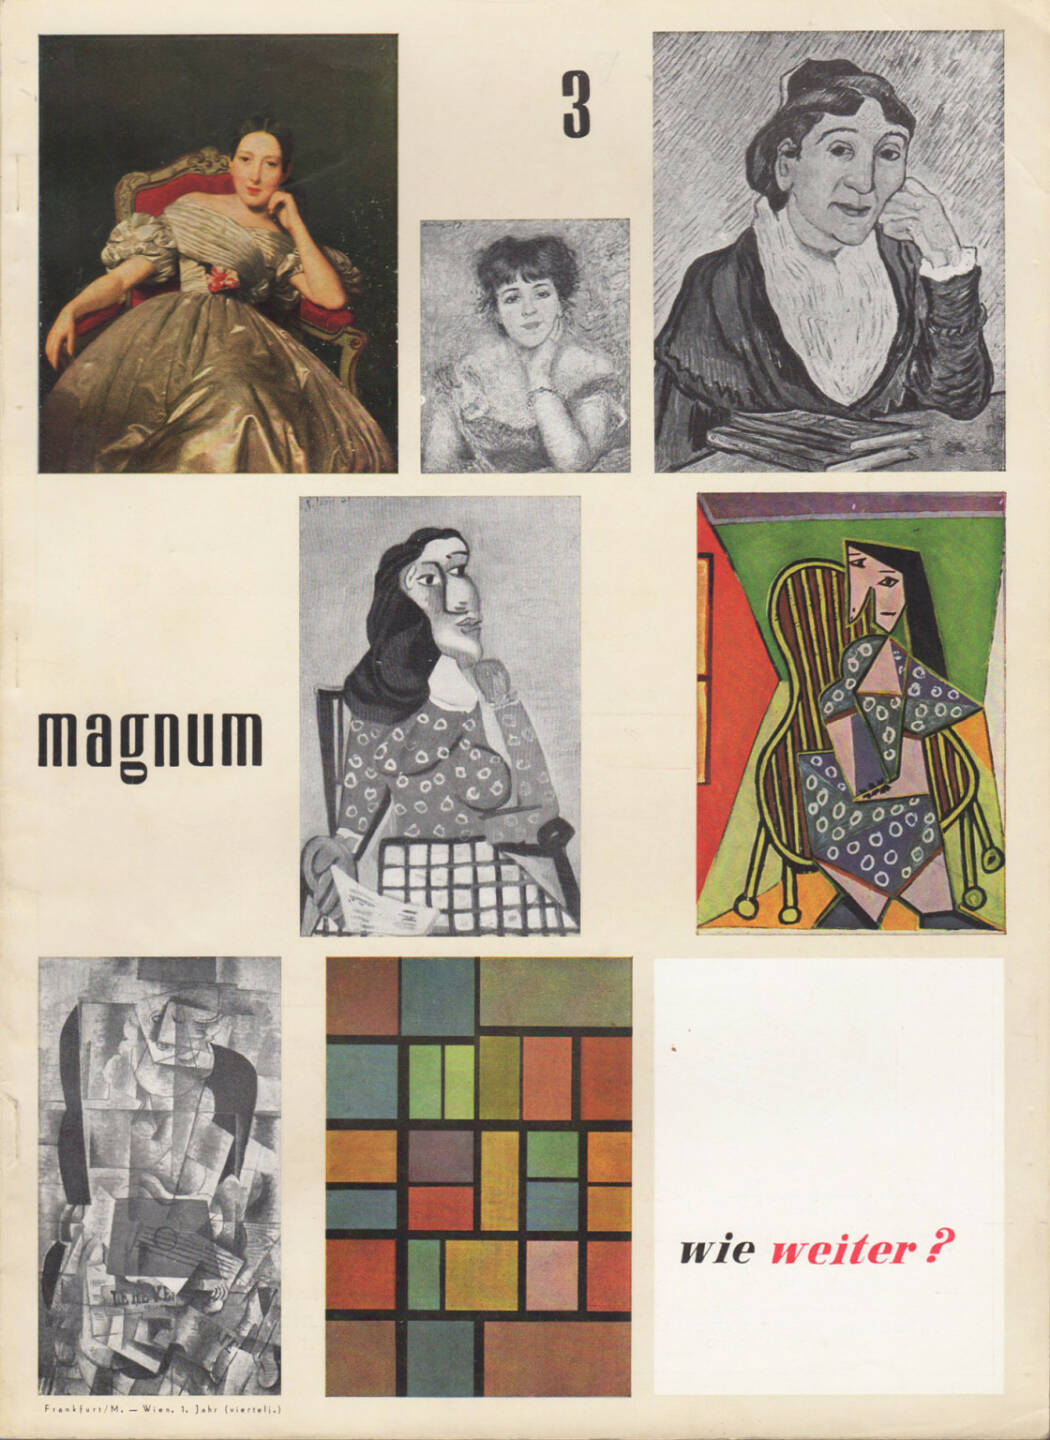 magnum – die Zeitschrift für das moderne Leben, Nummer 3, Zeitschriftenverlag Austria International und Magnum 1954, Cover - http://josefchladek.com/book/magnum_die_zeitschrift_fur_das_moderne_leben_nummer_3_1954_-_wie_weiter